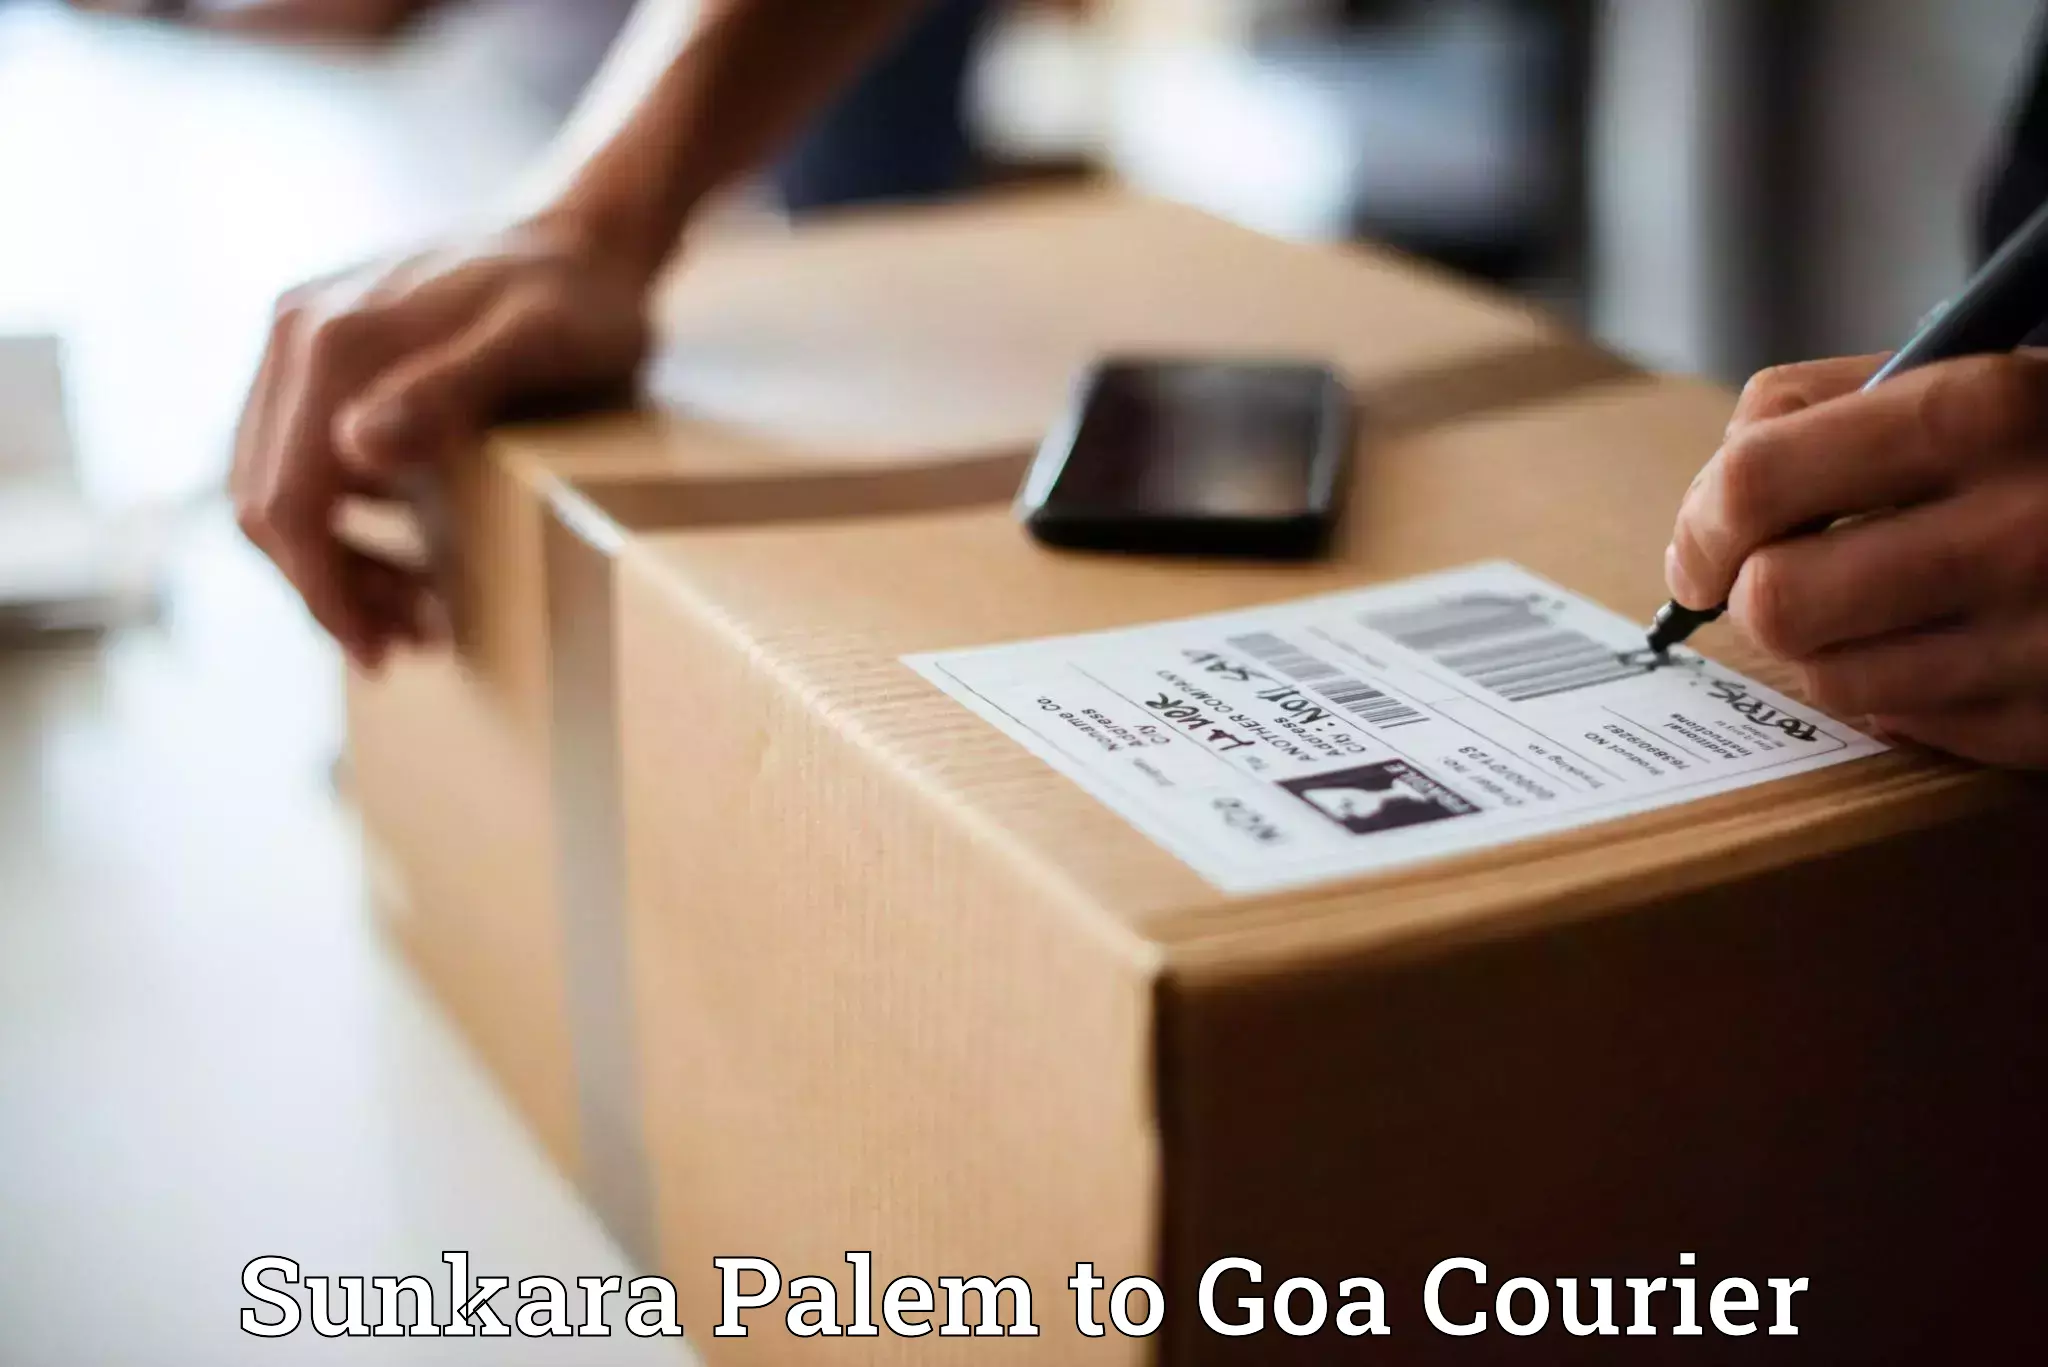 Efficient parcel service Sunkara Palem to Panaji